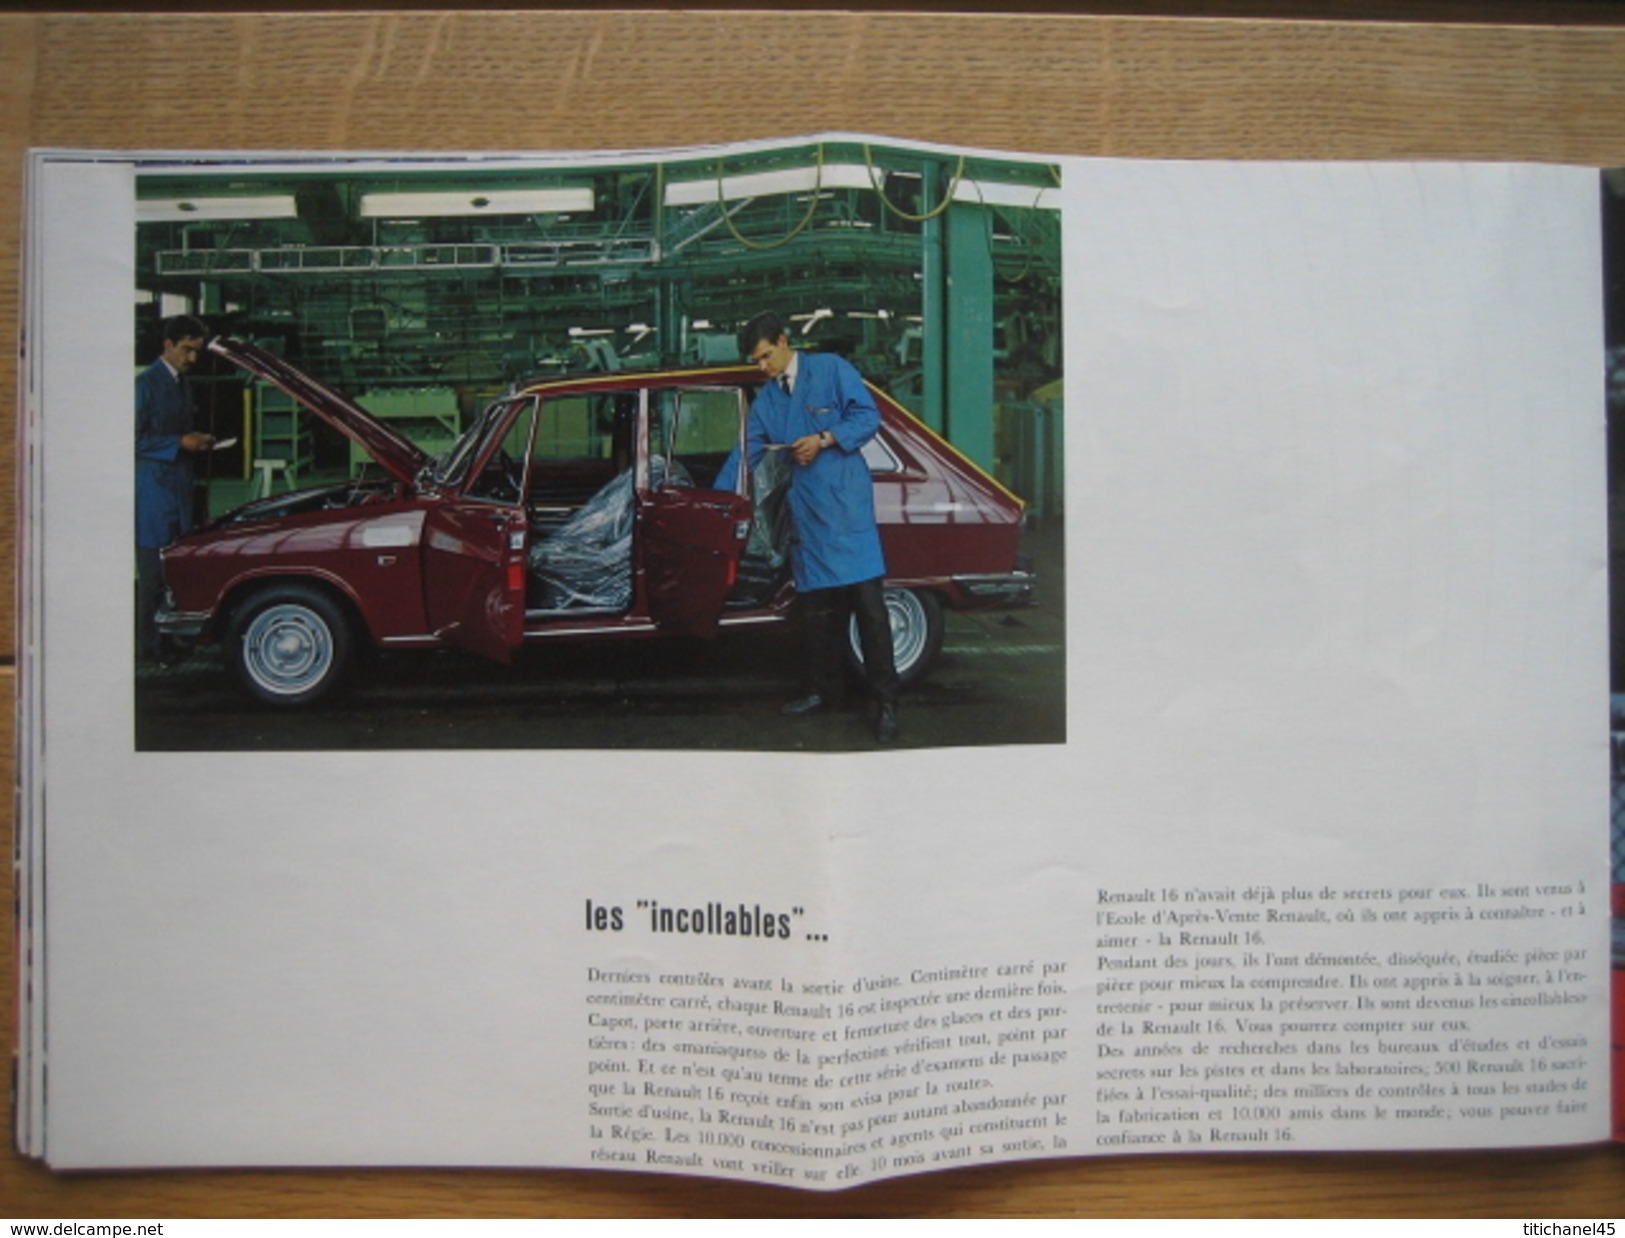 Catalogue publicitaire de 1965 automobile RENAULT 16 - 32 pages